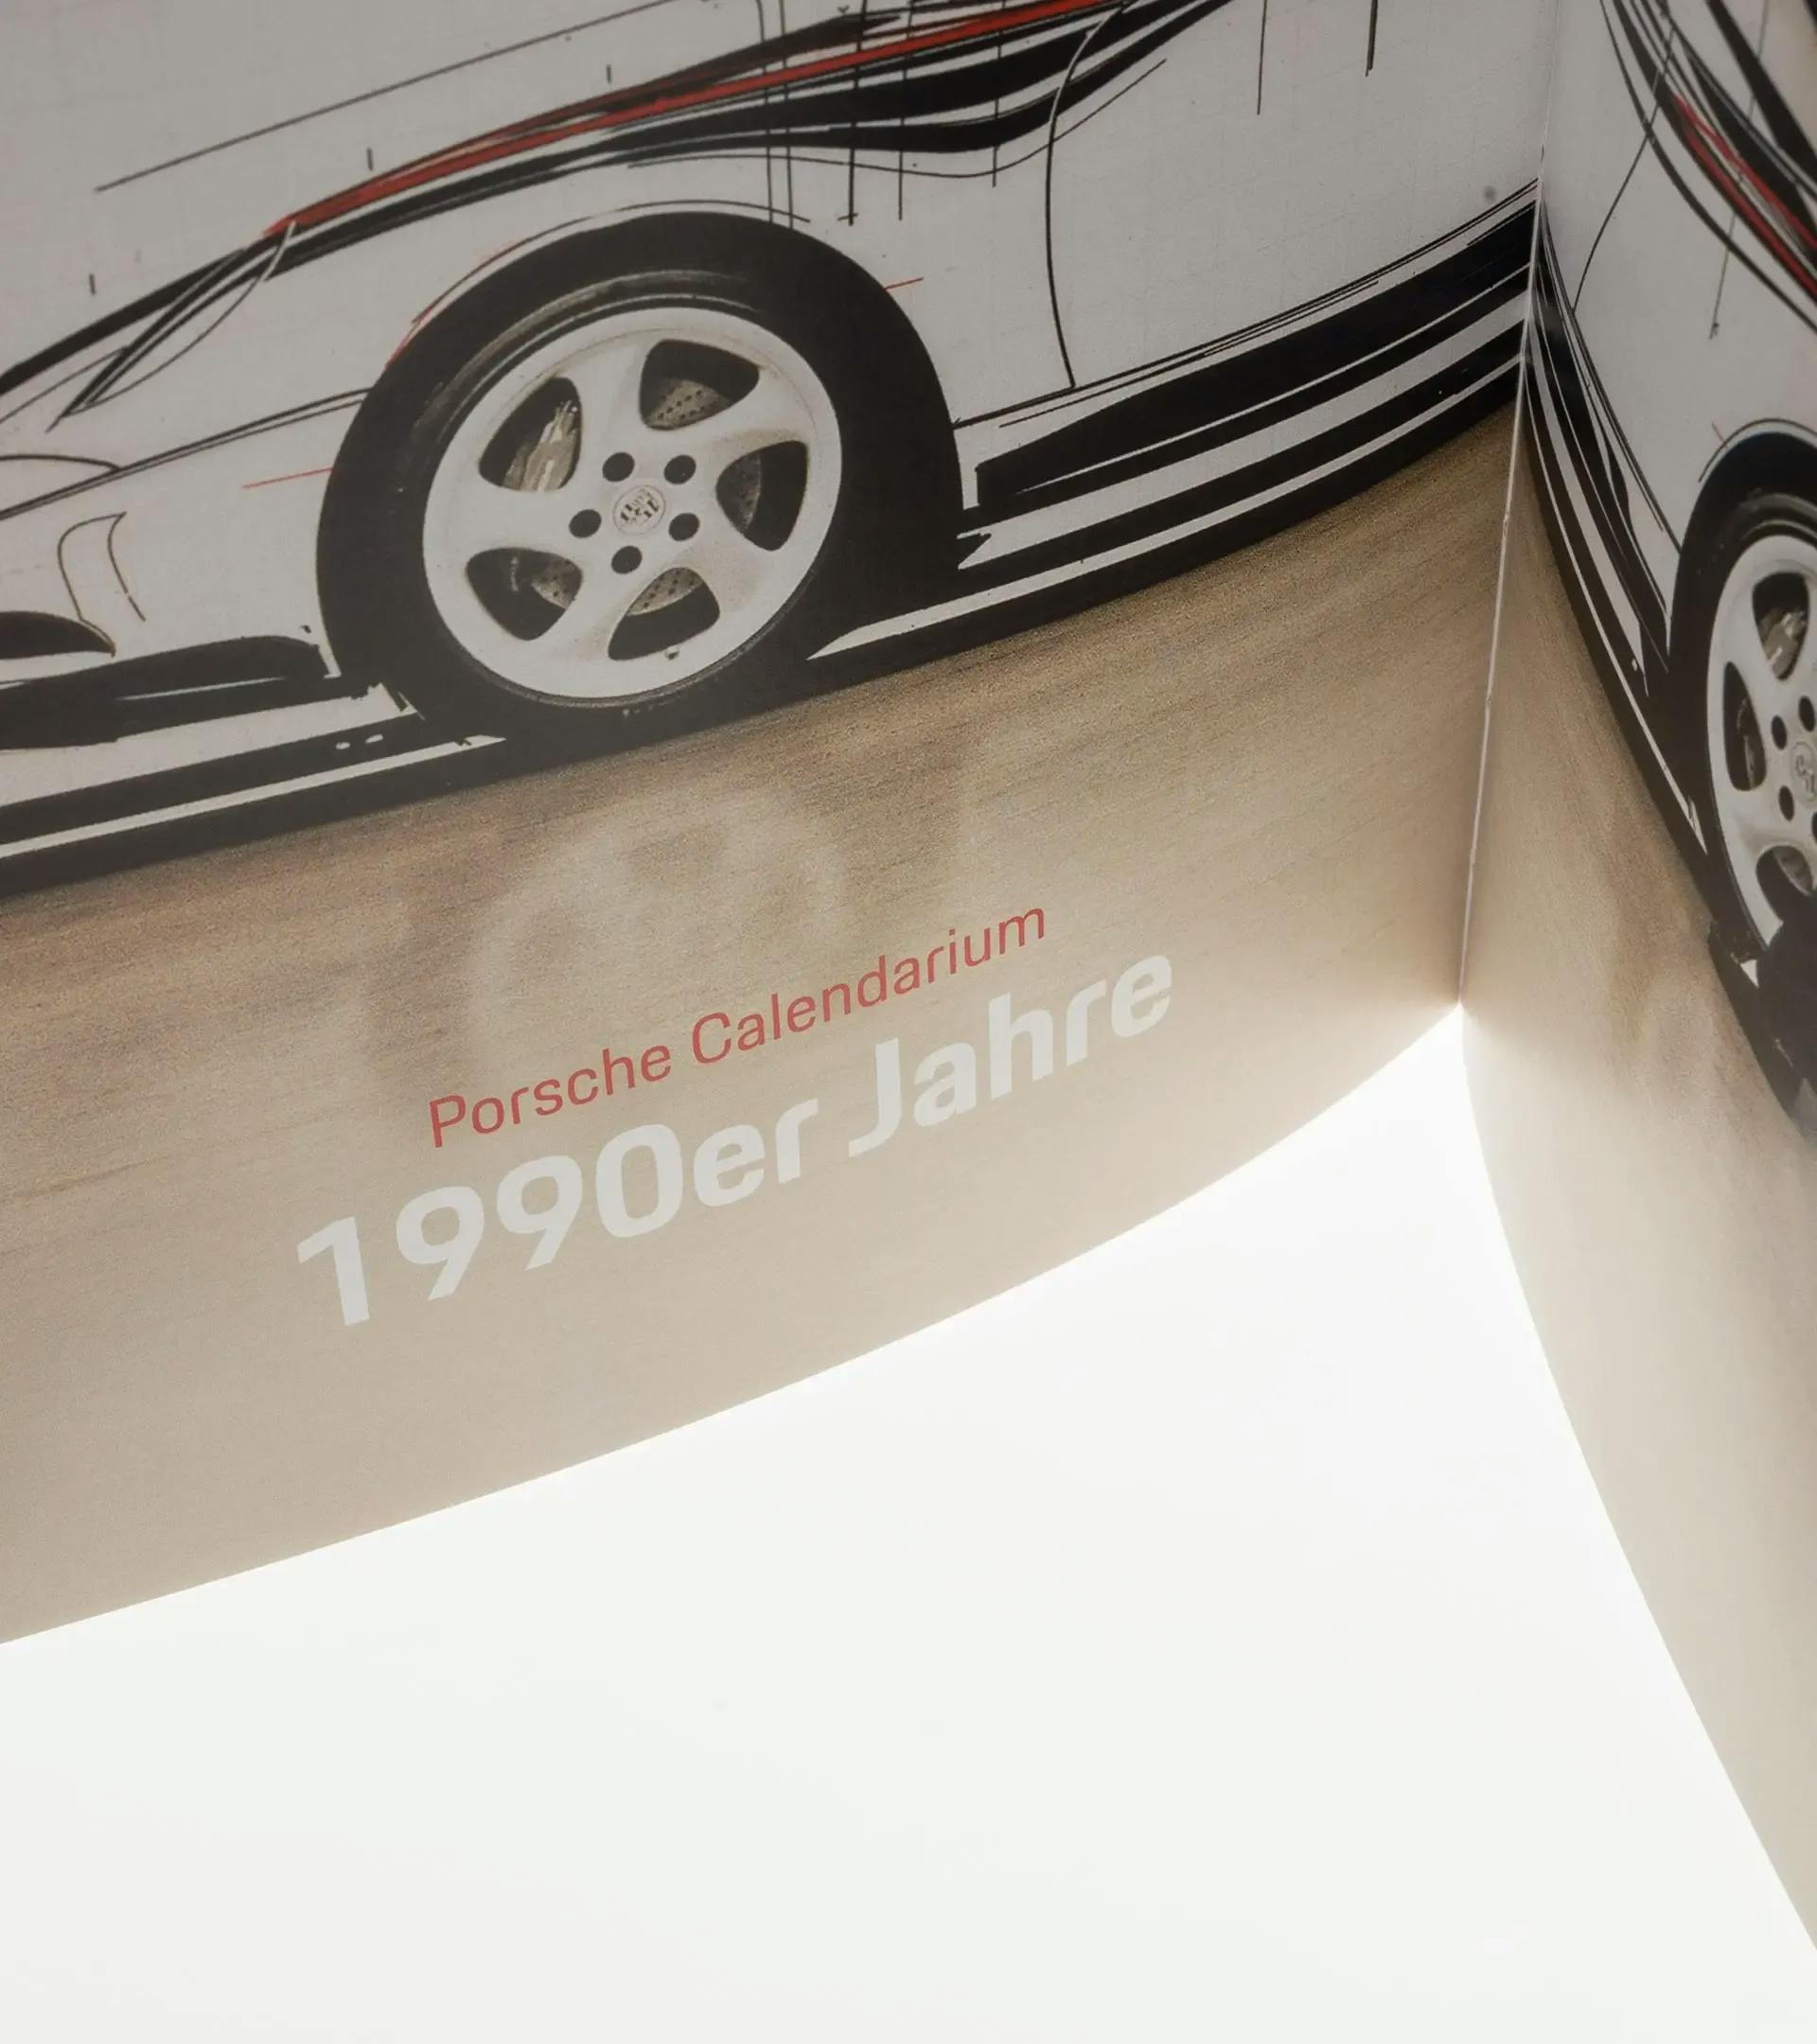 Buch Porsche Calendarium thumbnail 2